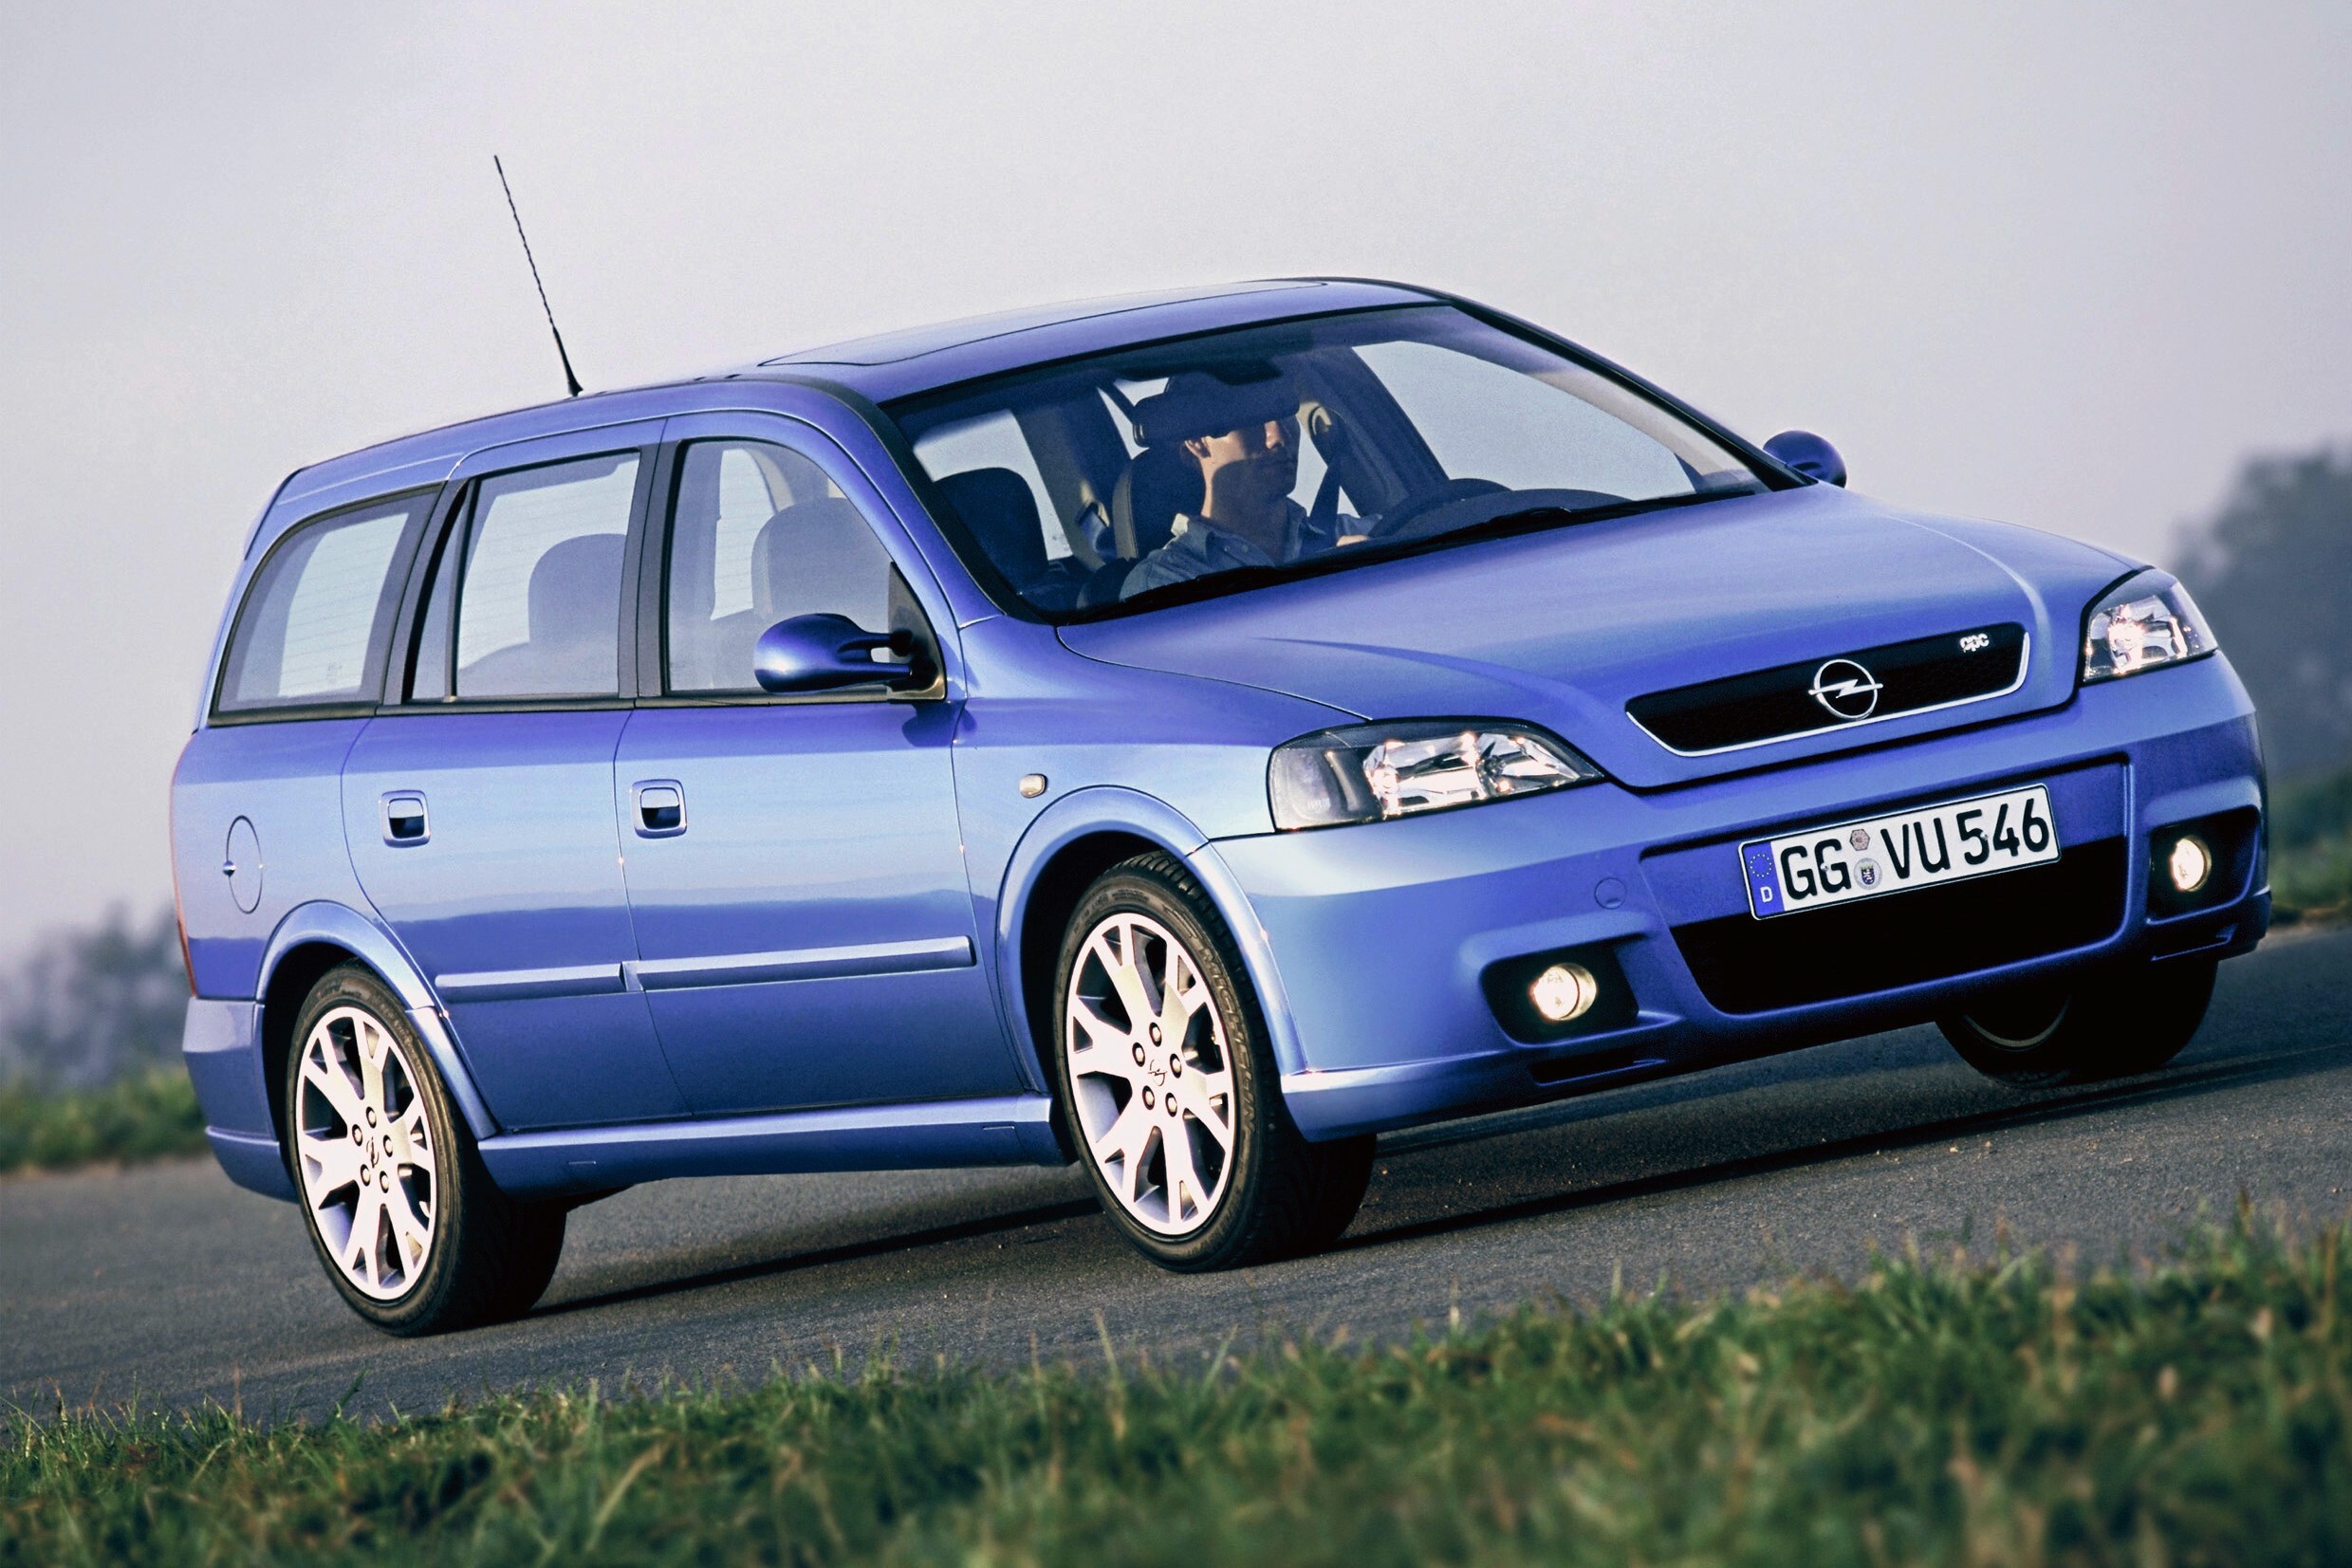 Джи караван. Opel Astra g 2004 универсал. Opel Astra g Caravan 2004. Opel Astra 2002 универсал. Opel Astra Caravan 2002.